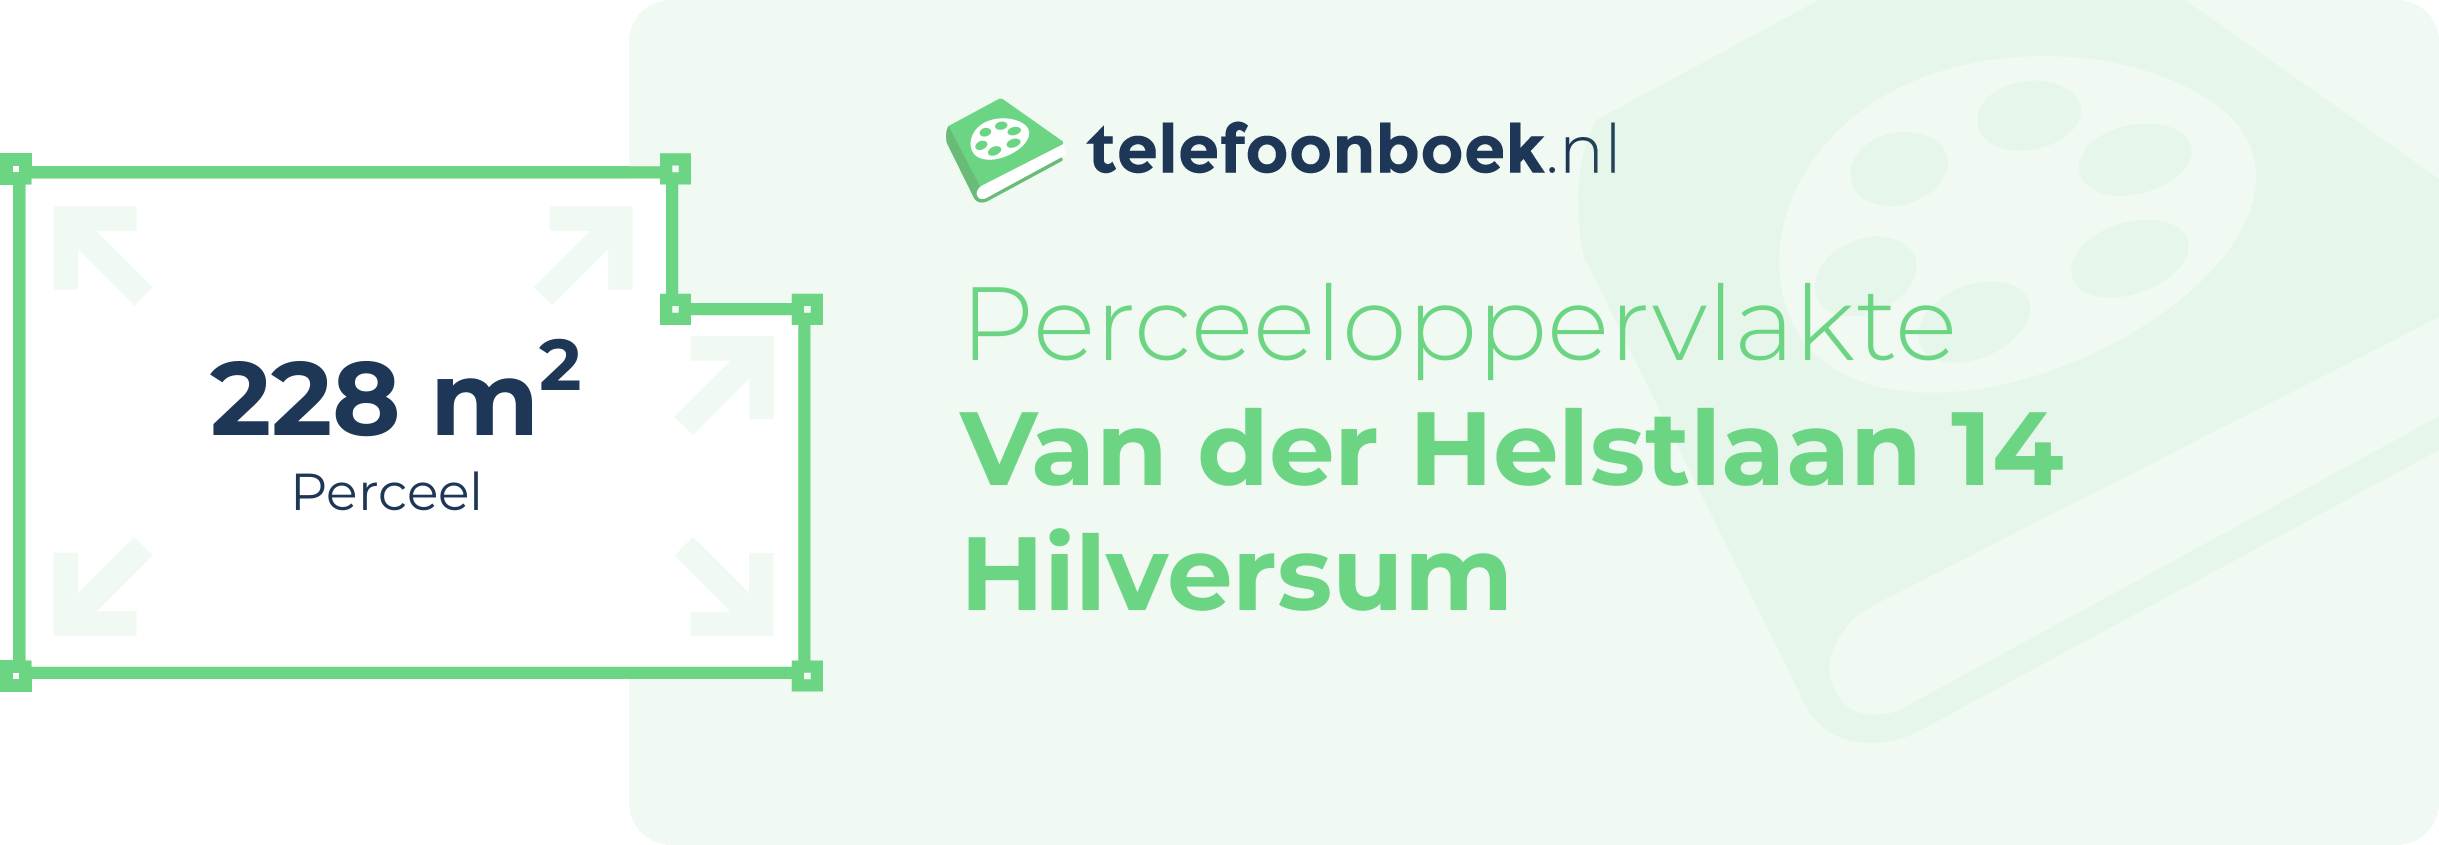 Perceeloppervlakte Van Der Helstlaan 14 Hilversum